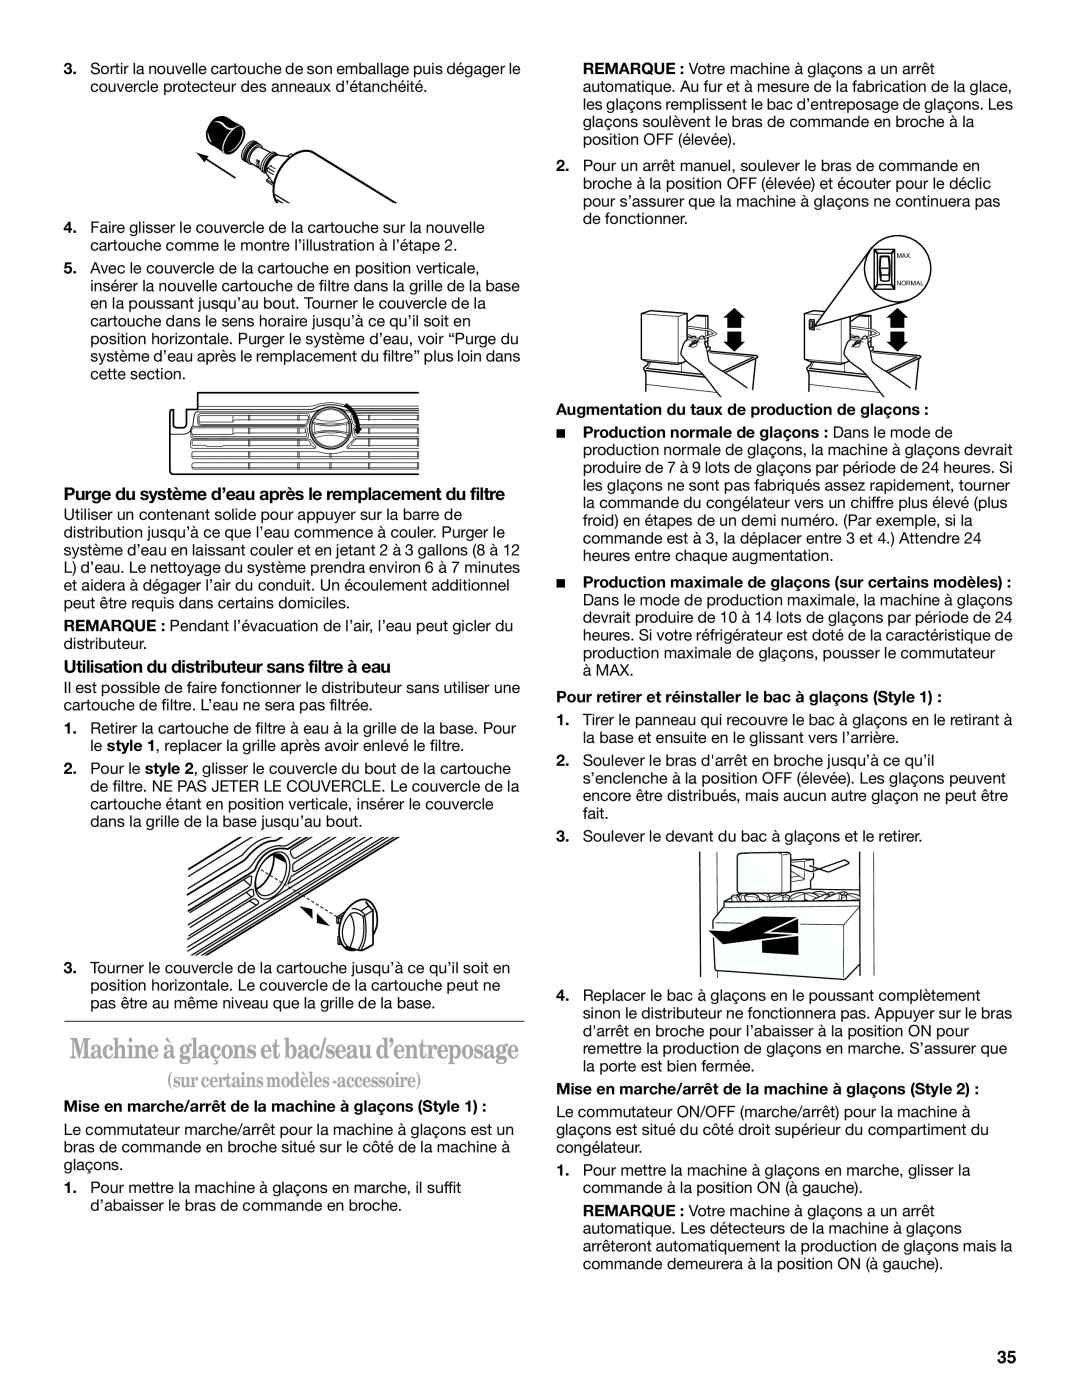 Whirlpool GT1SHTXMQ01, ED2FHEXLQ00 manual Machine à glaçons et bac/seau d’entreposage, sur certains modèles -accessoire 